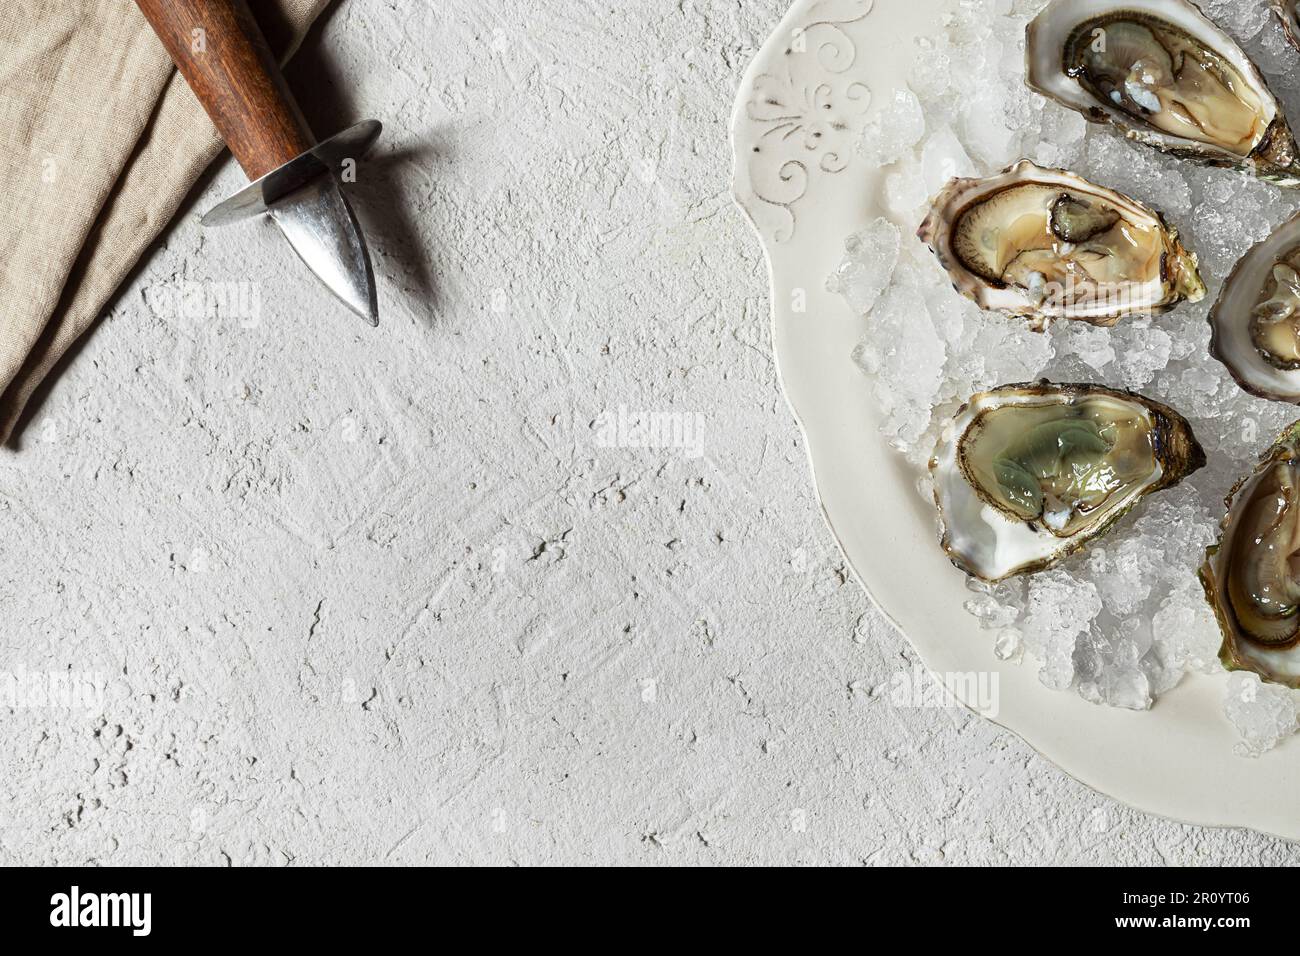 Assiette avec huîtres fraîches ouvertes et ouvre-huîtres sur table légère,  vue de dessus avec espace de copie Photo Stock - Alamy